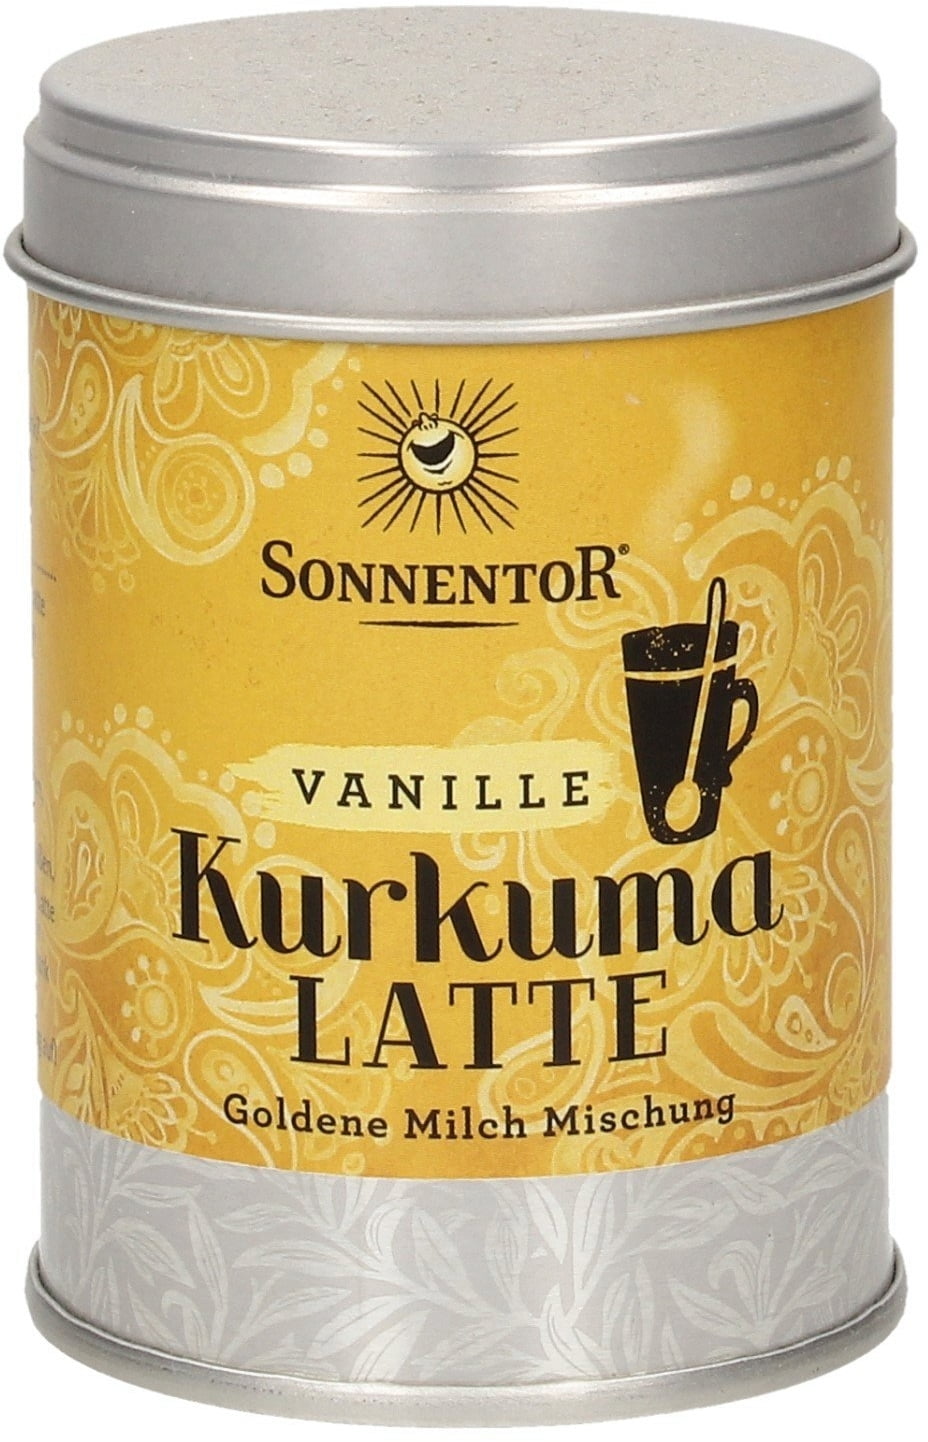 de0fca46-kurkuma-latte-vanille-1044574-de